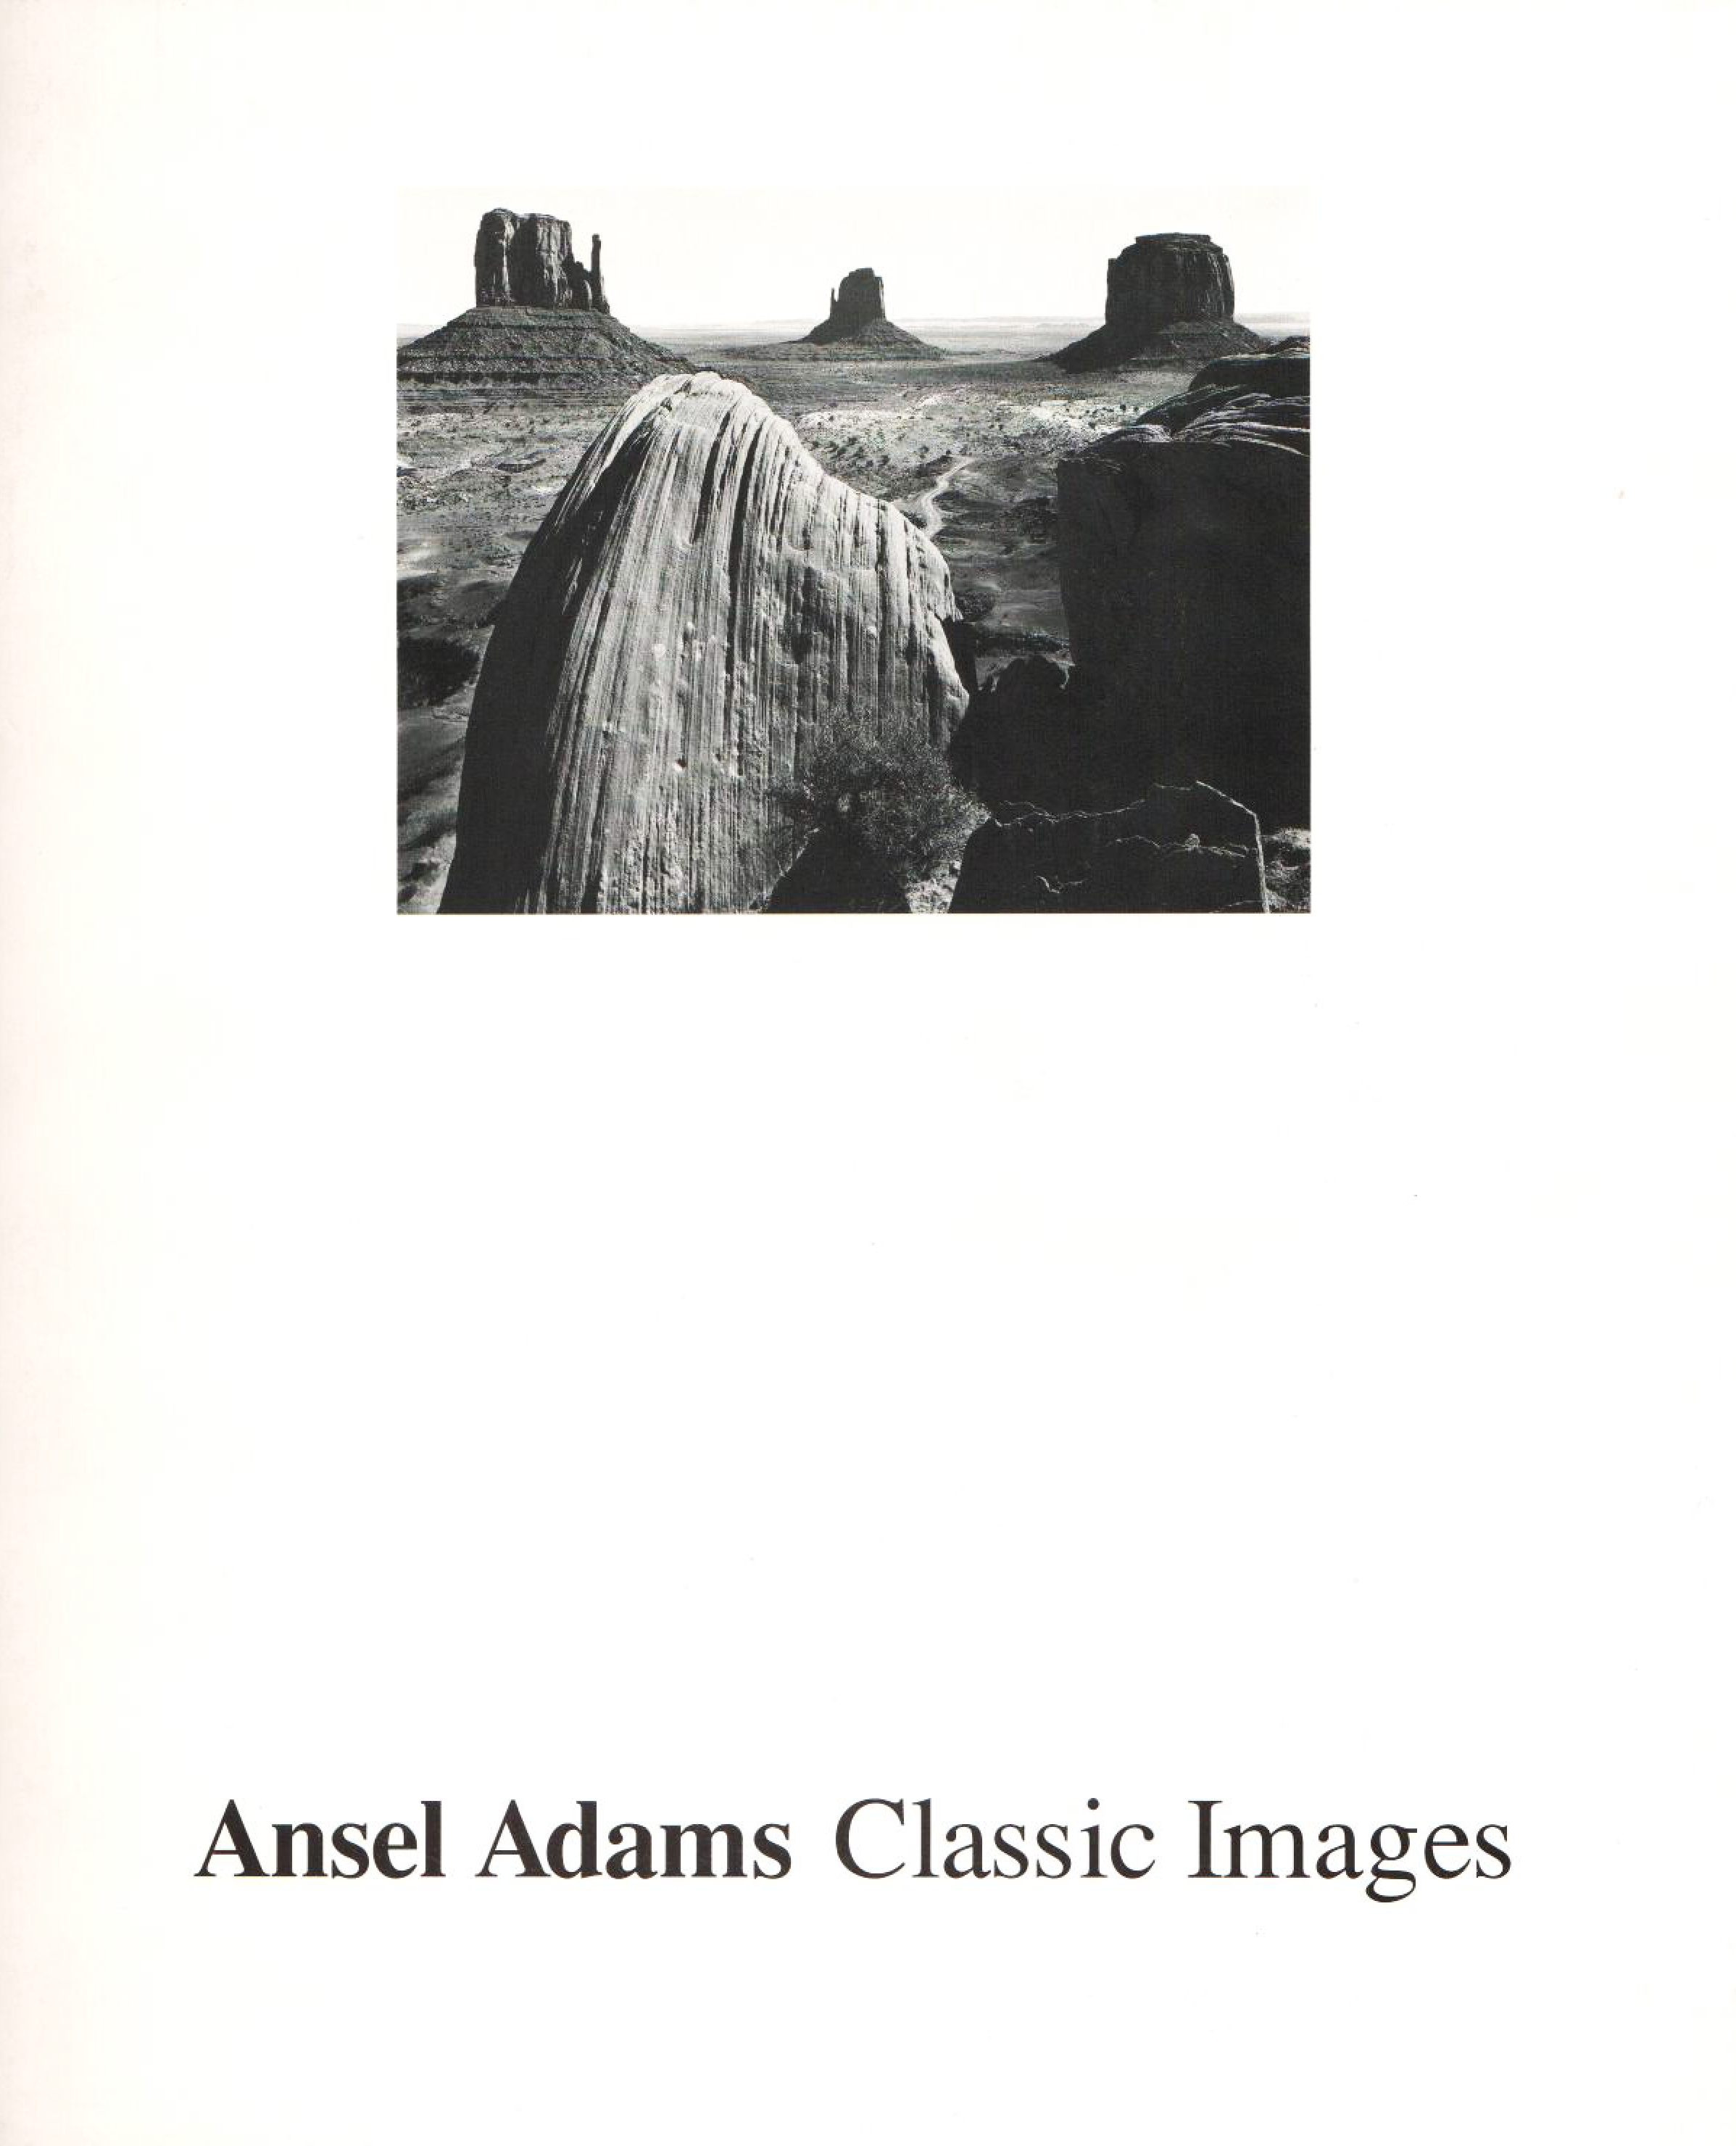 Ansel Adams: Classic Images / Kunstverein für die Rheinlande und